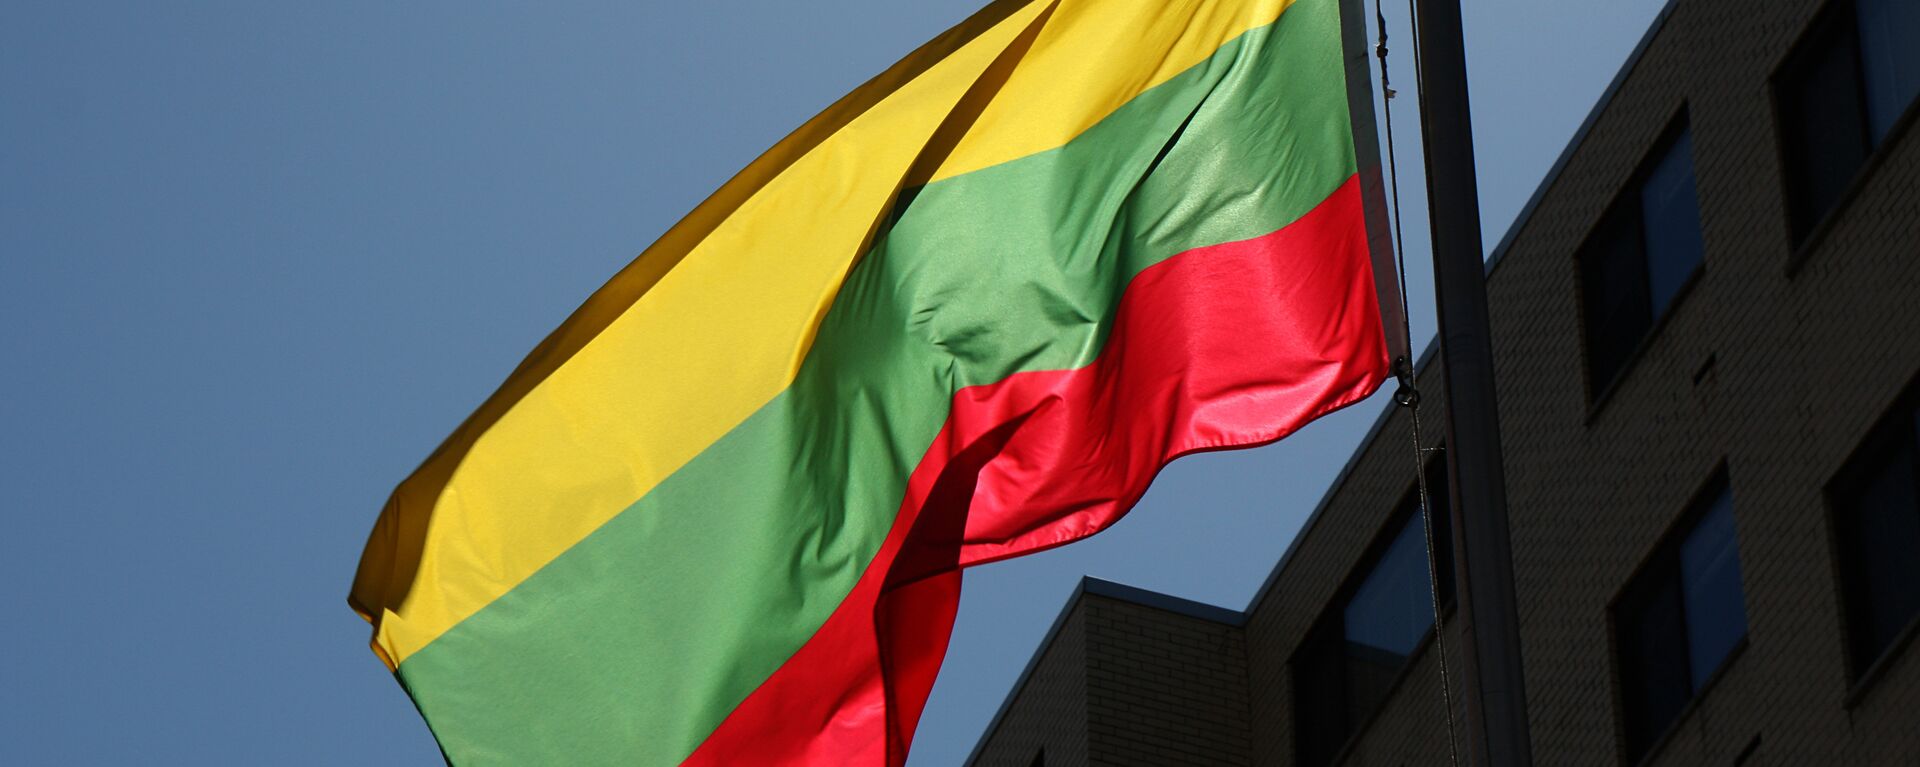 Bandera de Lituania - Sputnik Mundo, 1920, 08.07.2021